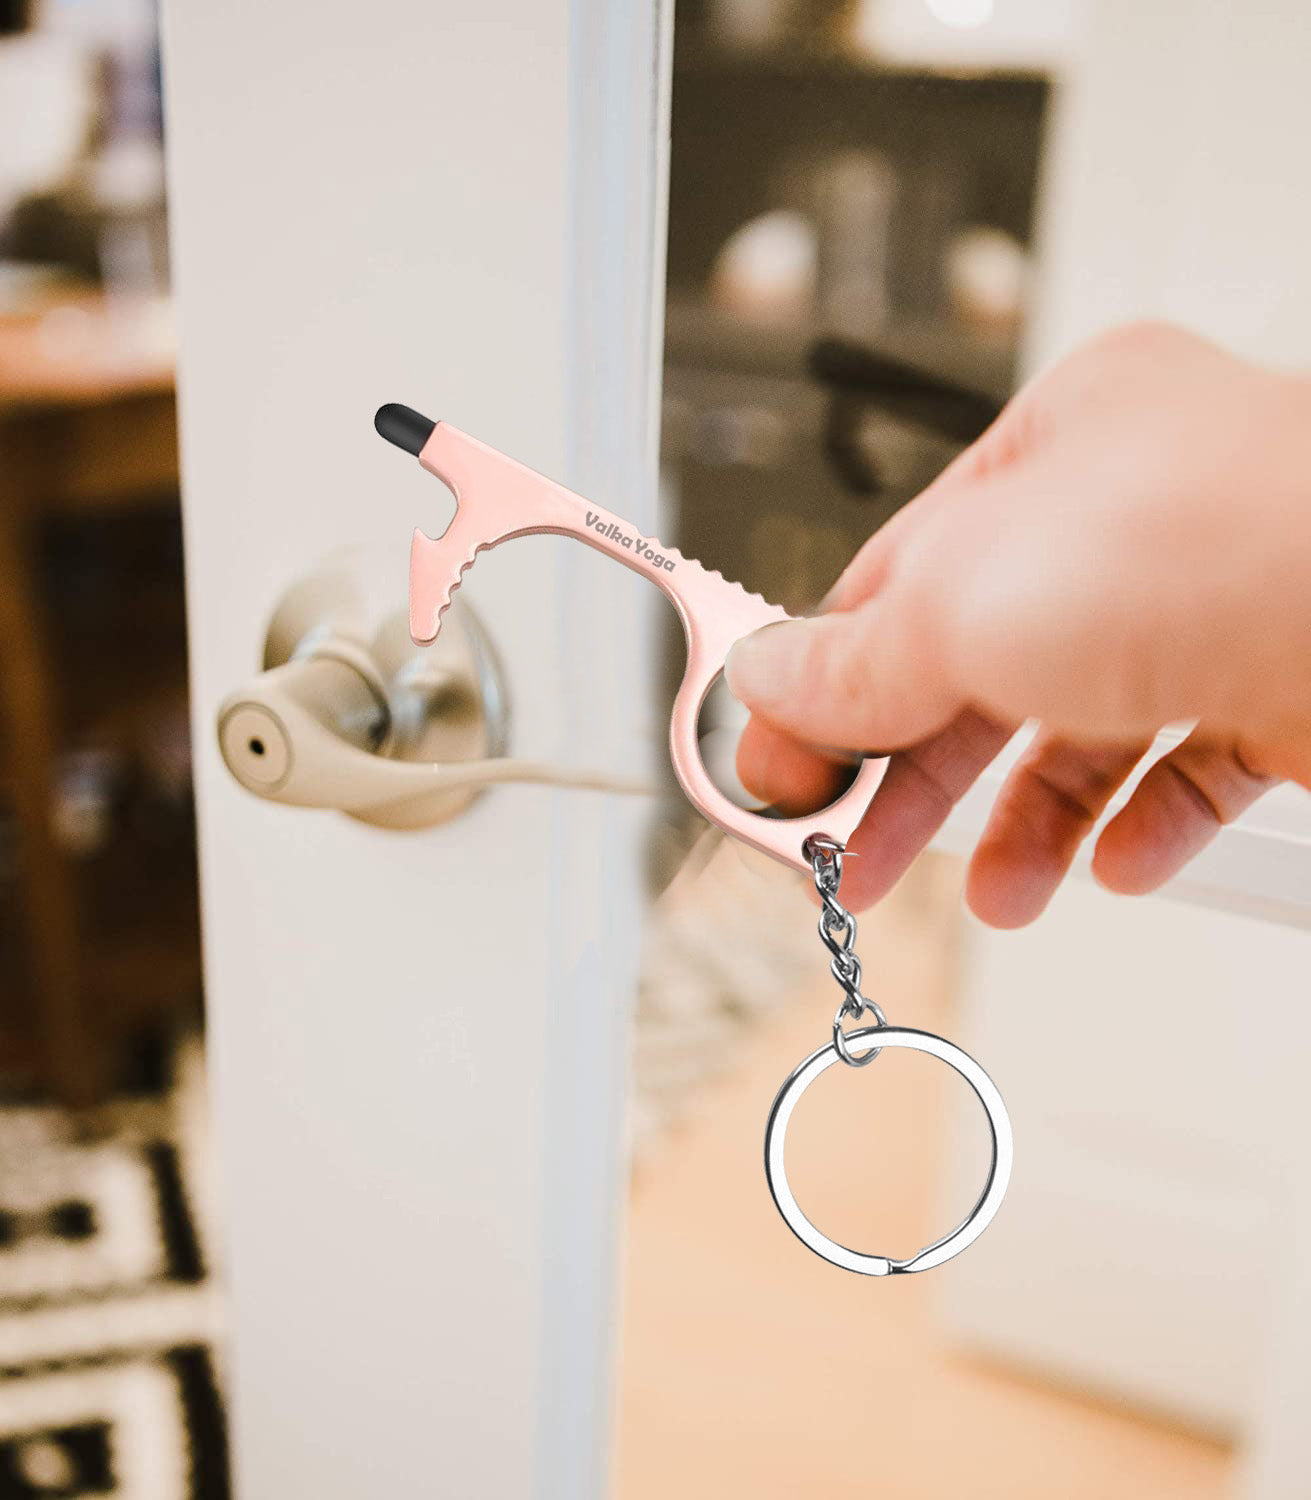 Copper door opener keychain